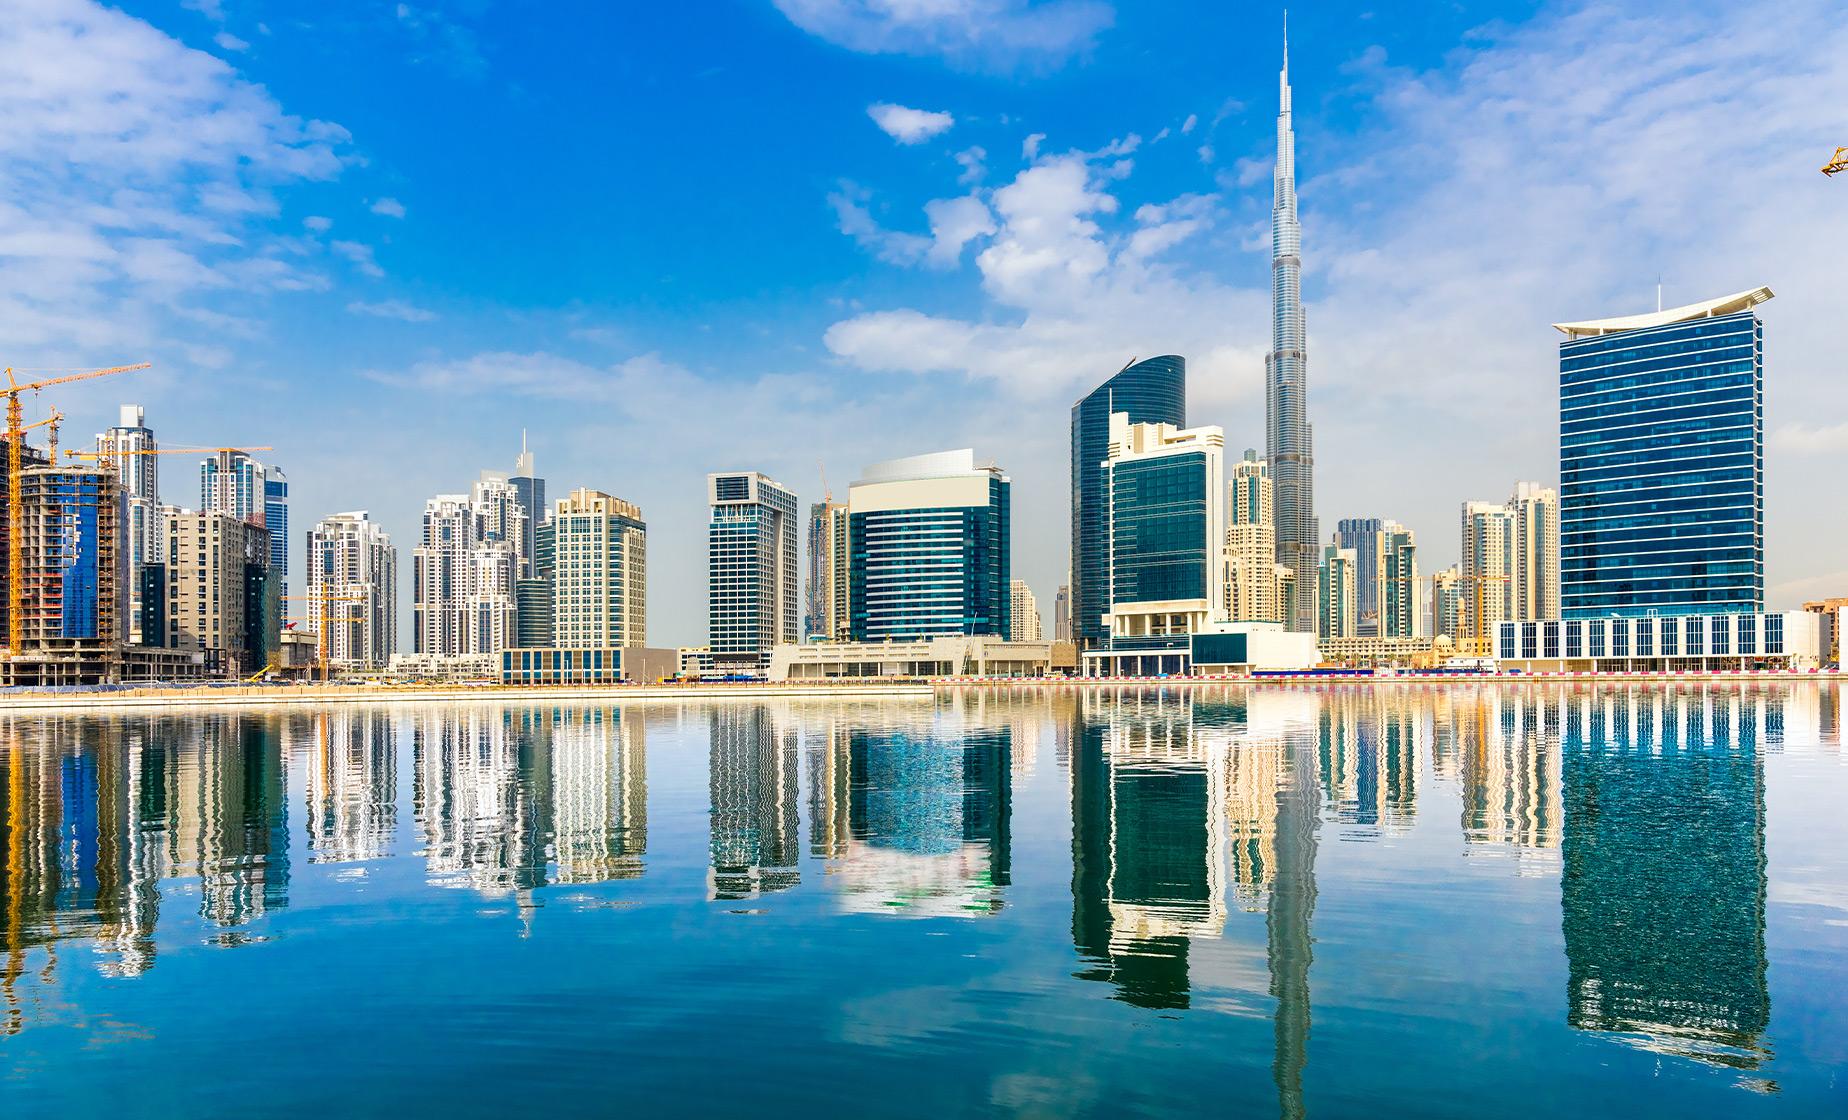 Private Modern Dubai with Burj Khalifa ticket & Dubai Aquarium